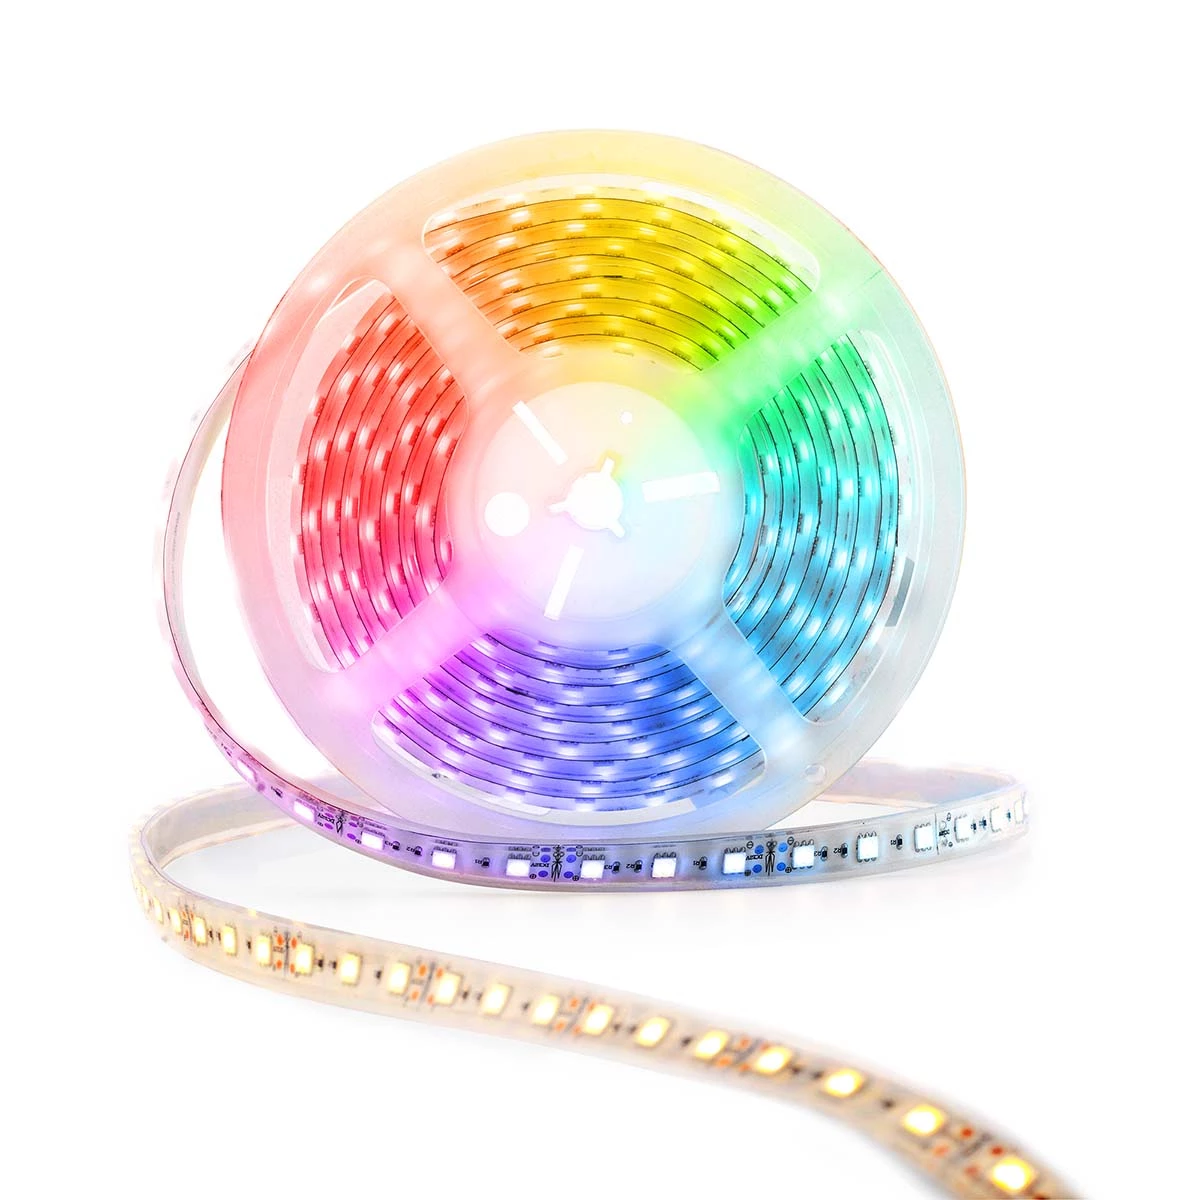 Smartlife Full Color LED-Streifen